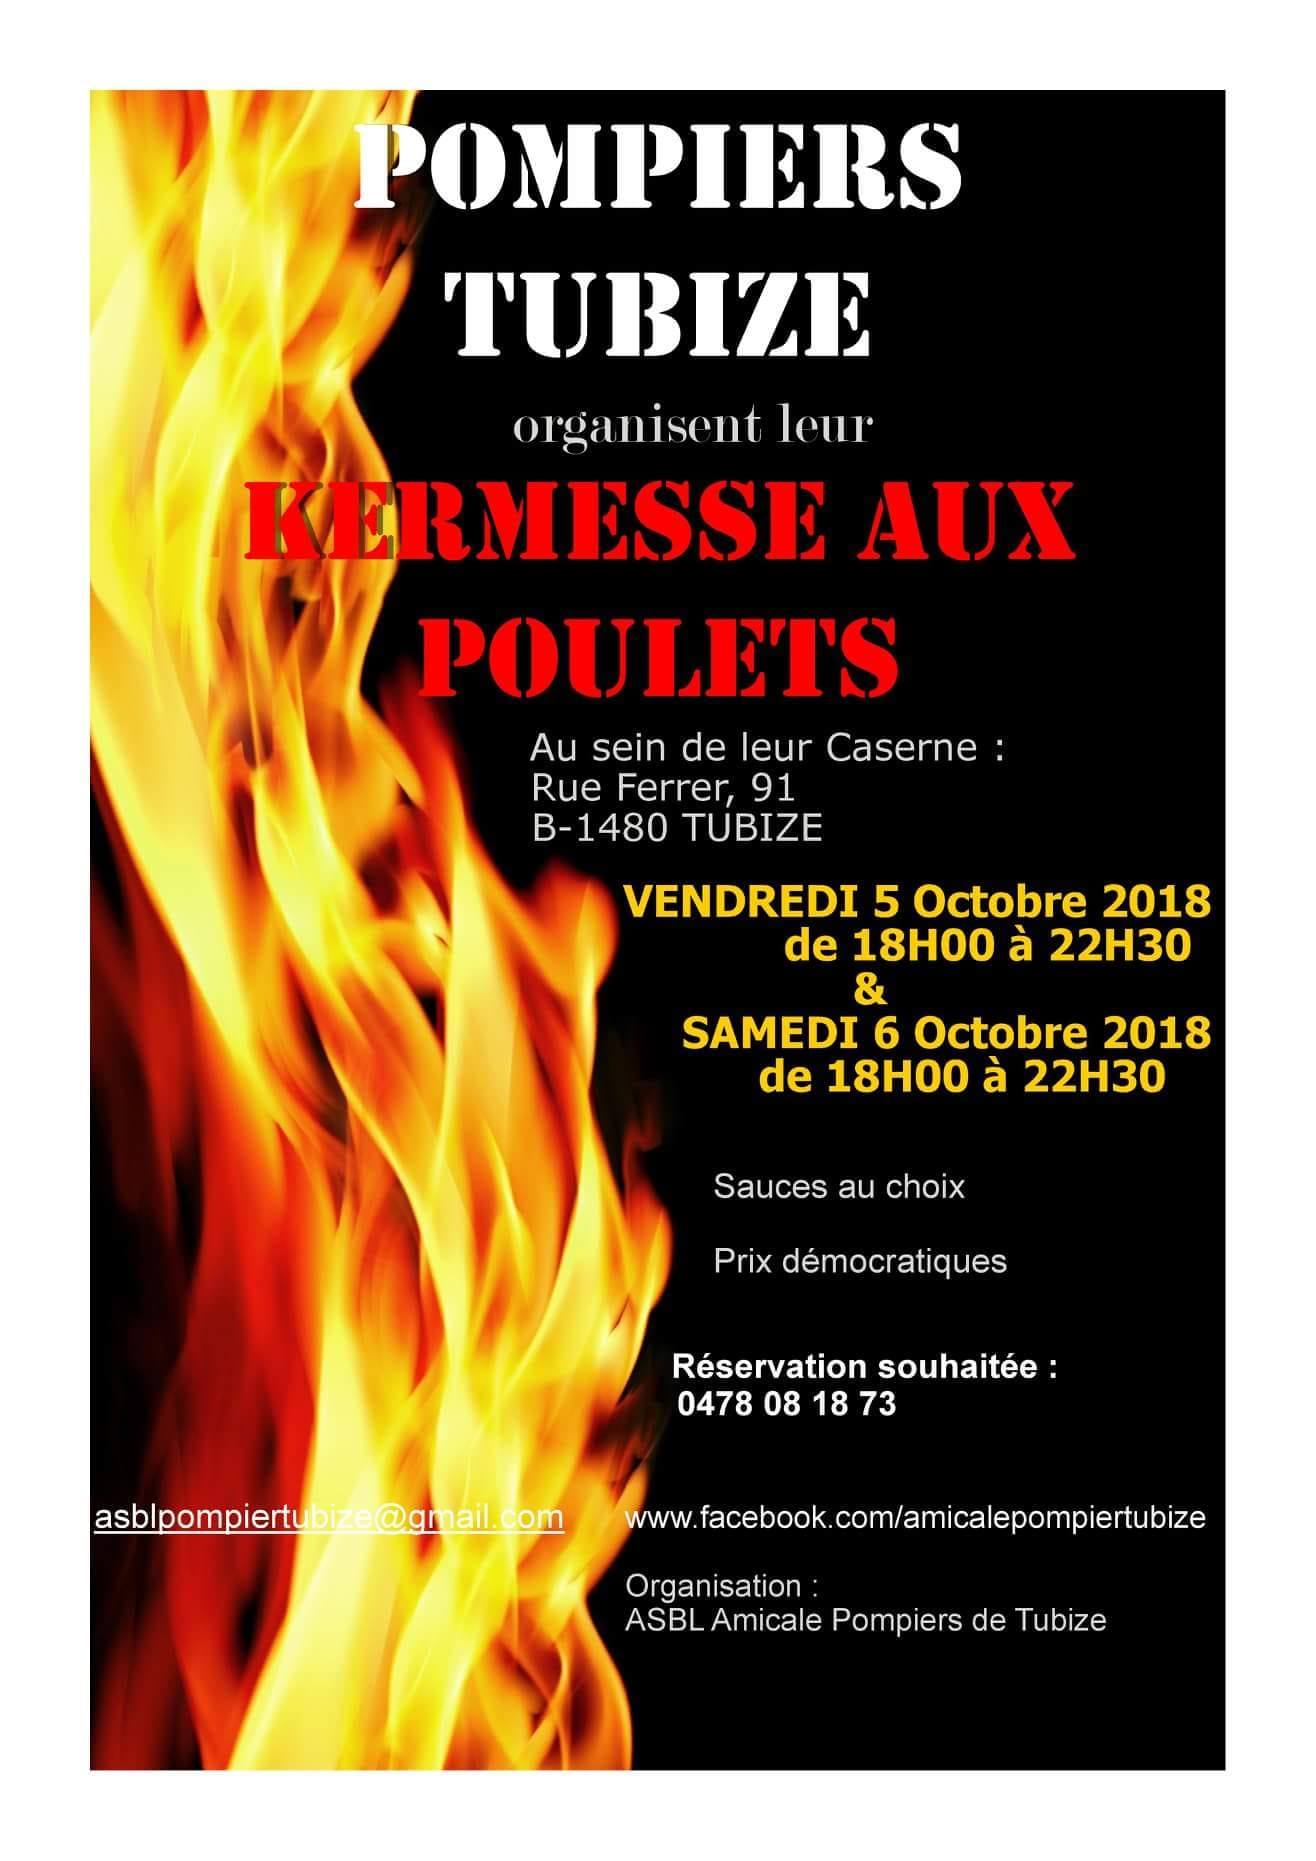 Kermesse aux poulets des pompiers de Tubize (5-6 octobre 2018) 41353110